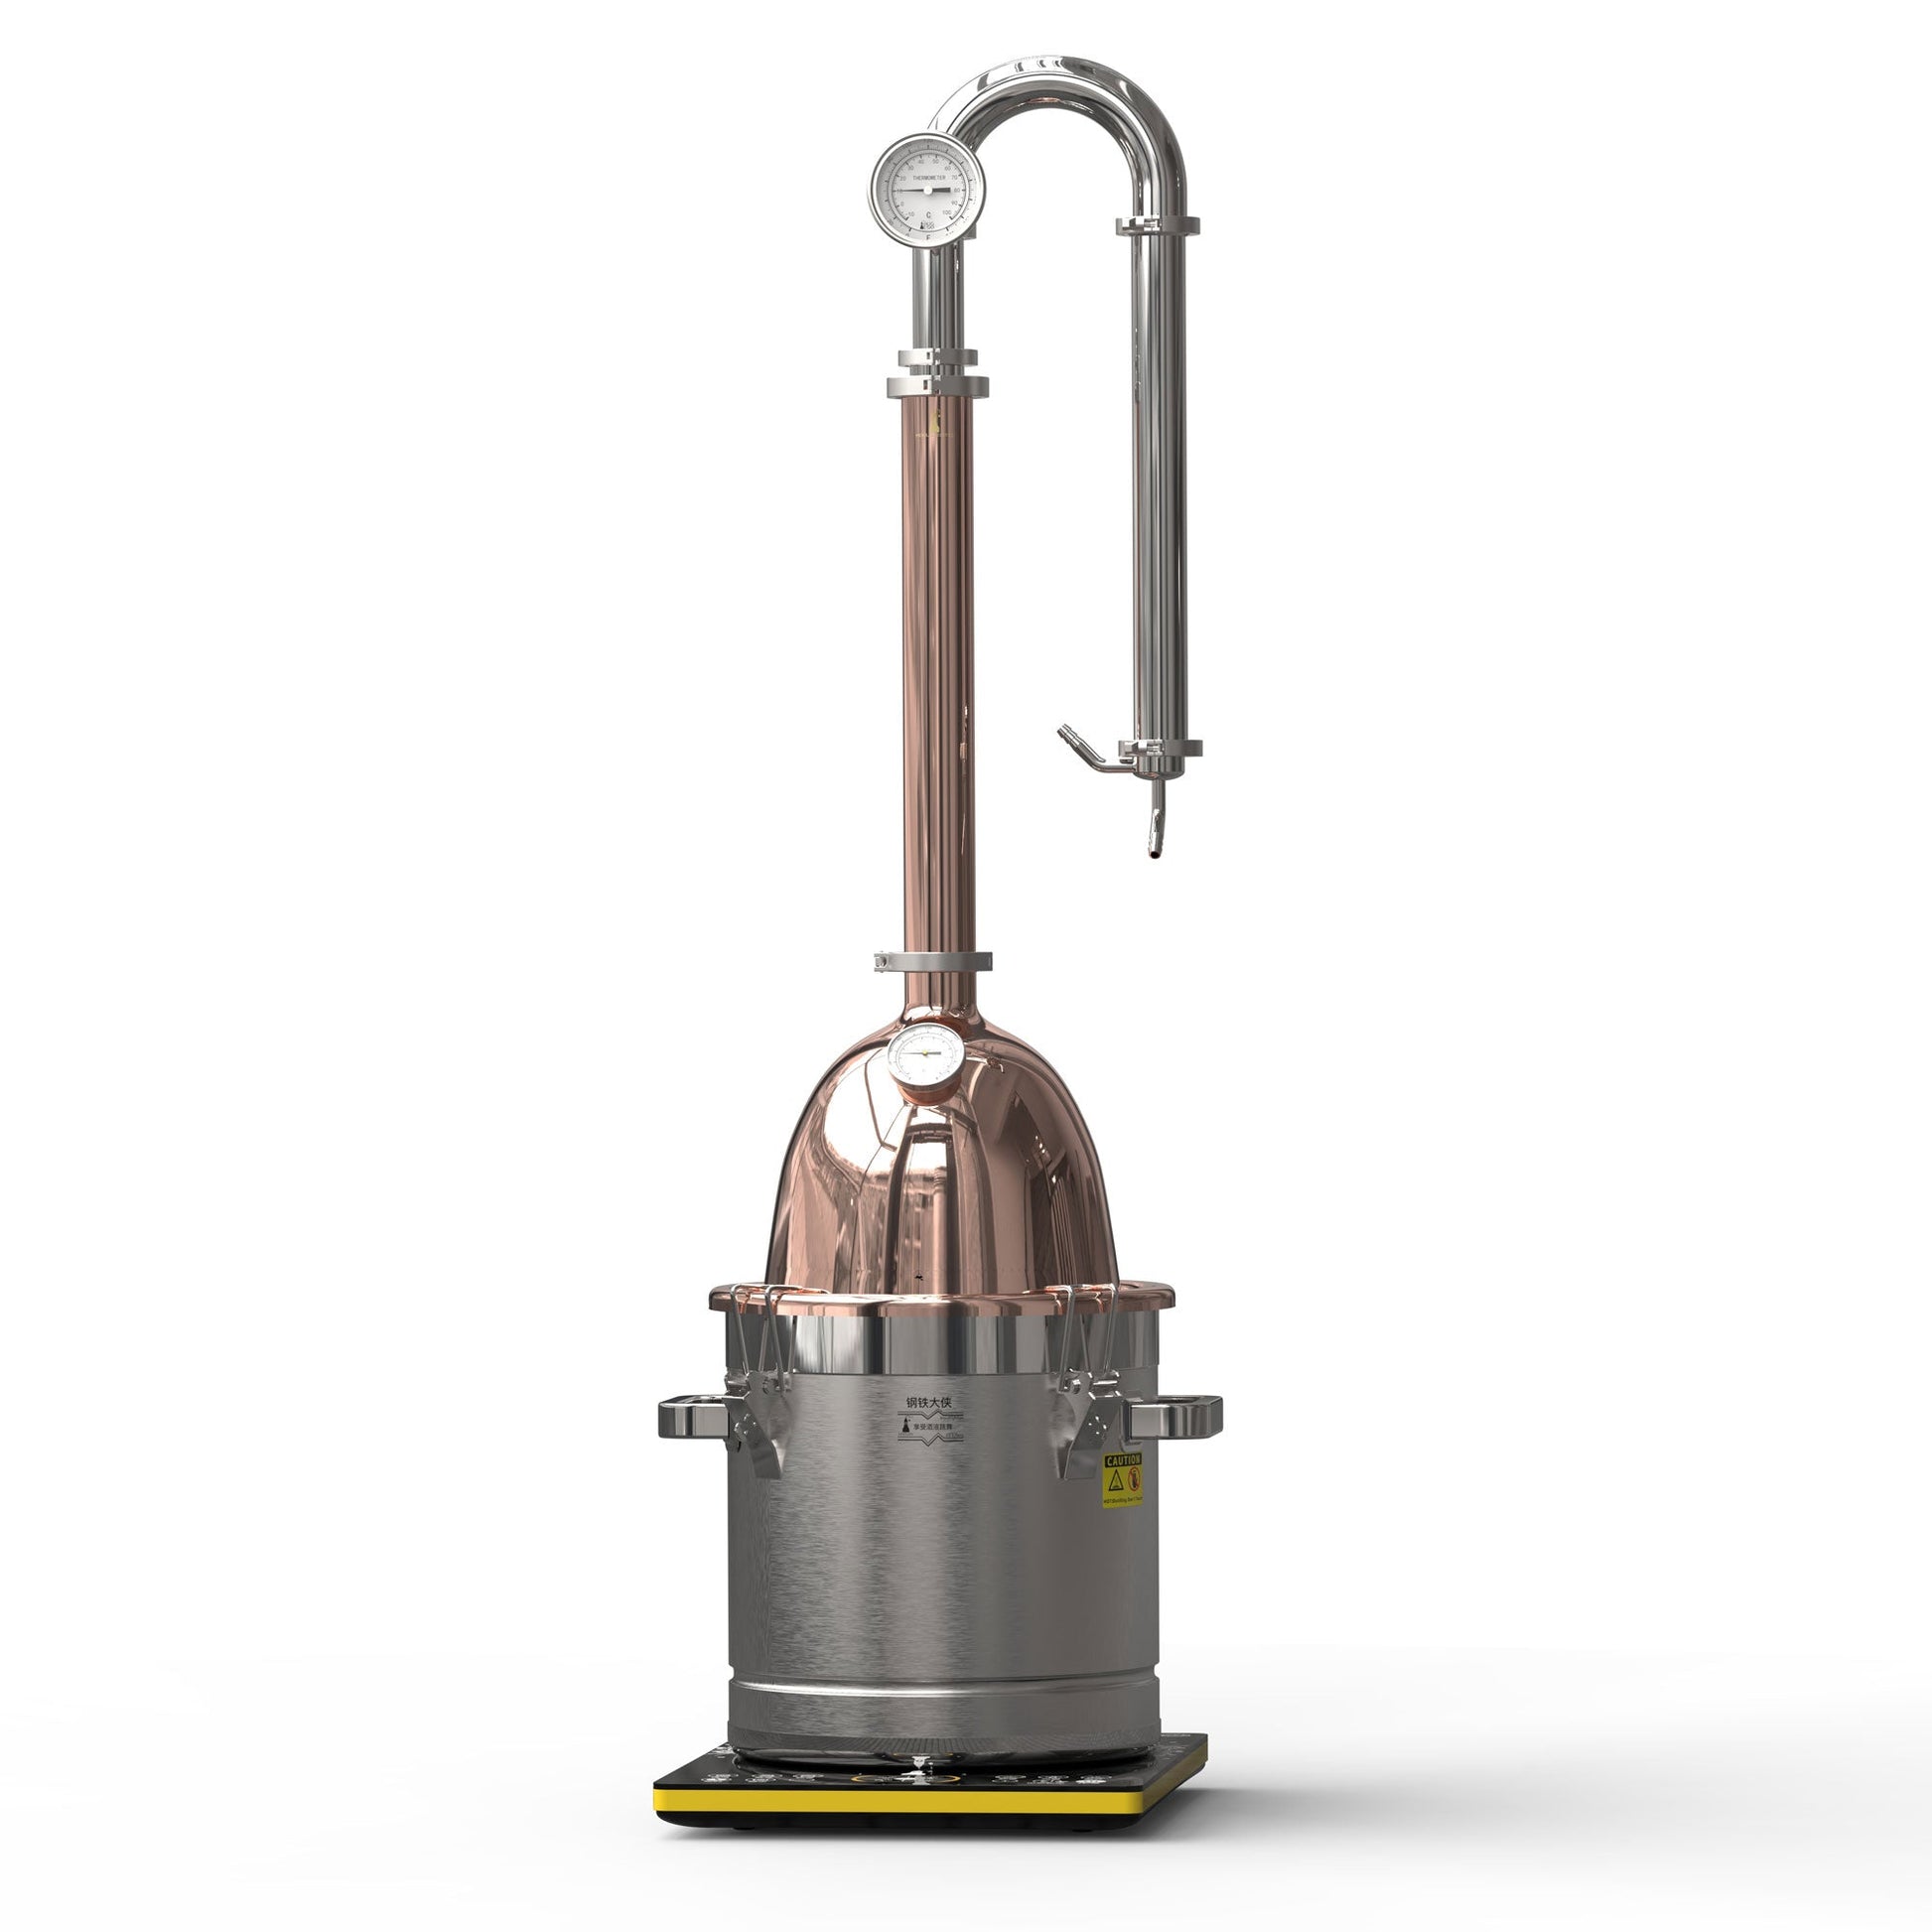 CV22 Distiller【Free shipping worldwide!】 - Hooloo Distilling Equipment Supply